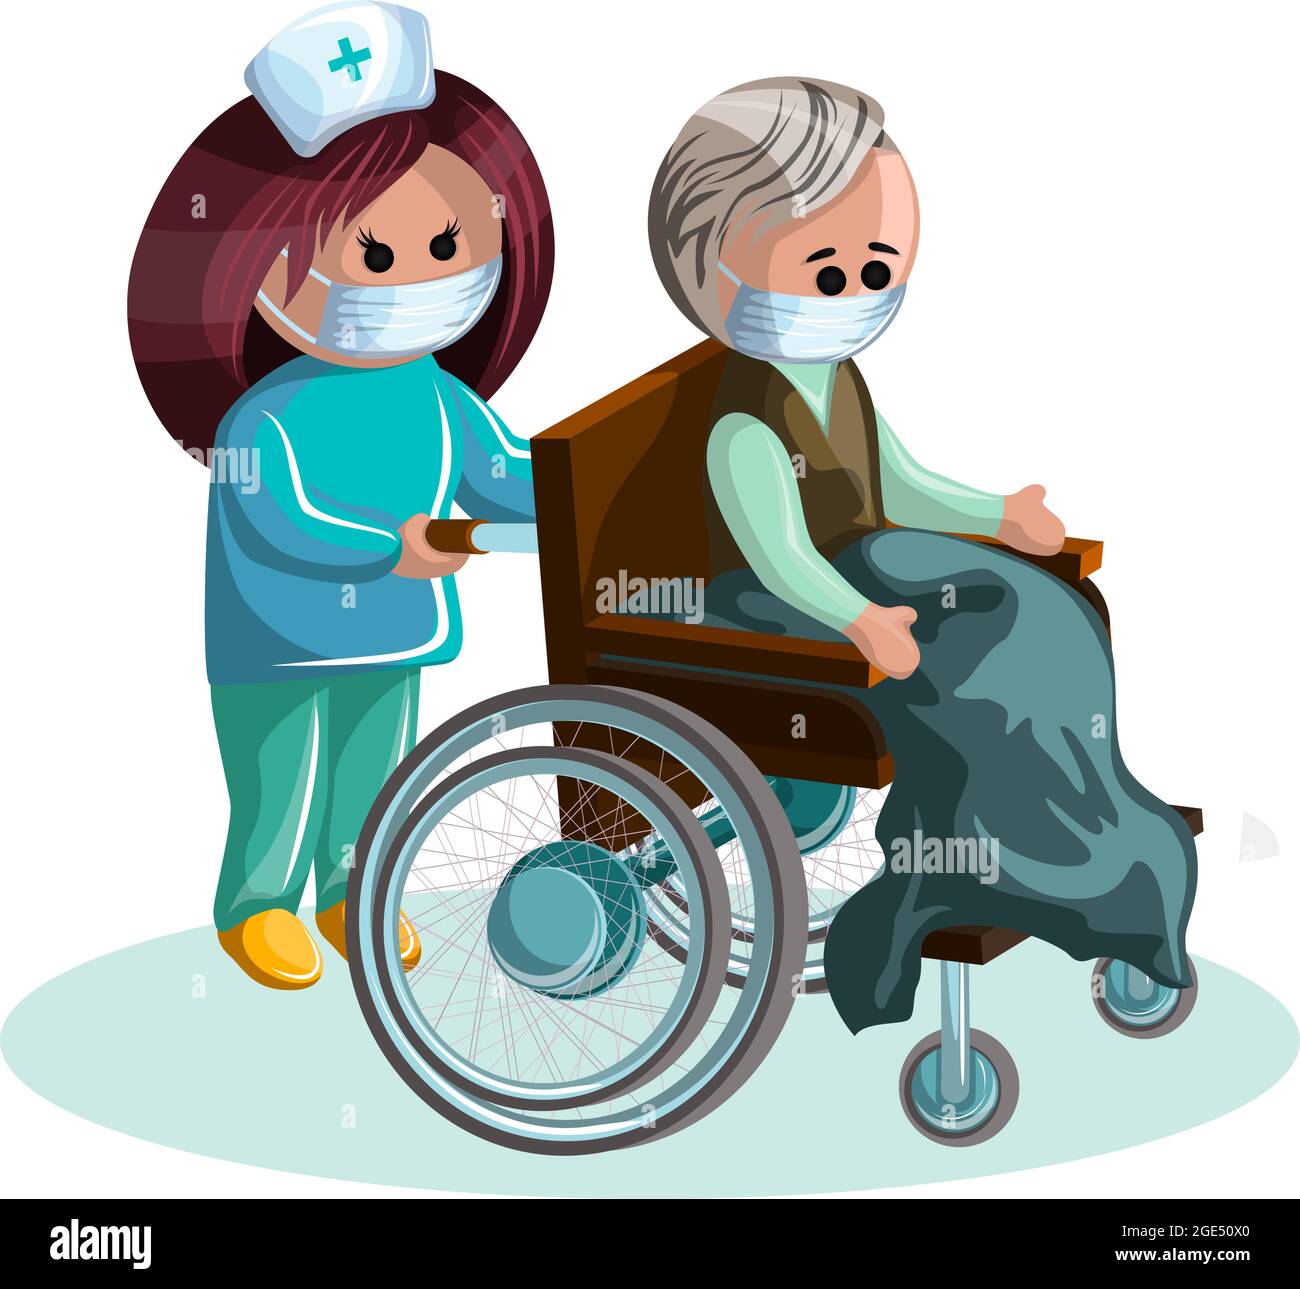 Immagine vettoriale di un uomo di mezza età in sedia a rotelle e di una donna che si prende cura di lui. EPS 10. Concetto. Immagine su sfondo bianco Illustrazione Vettoriale